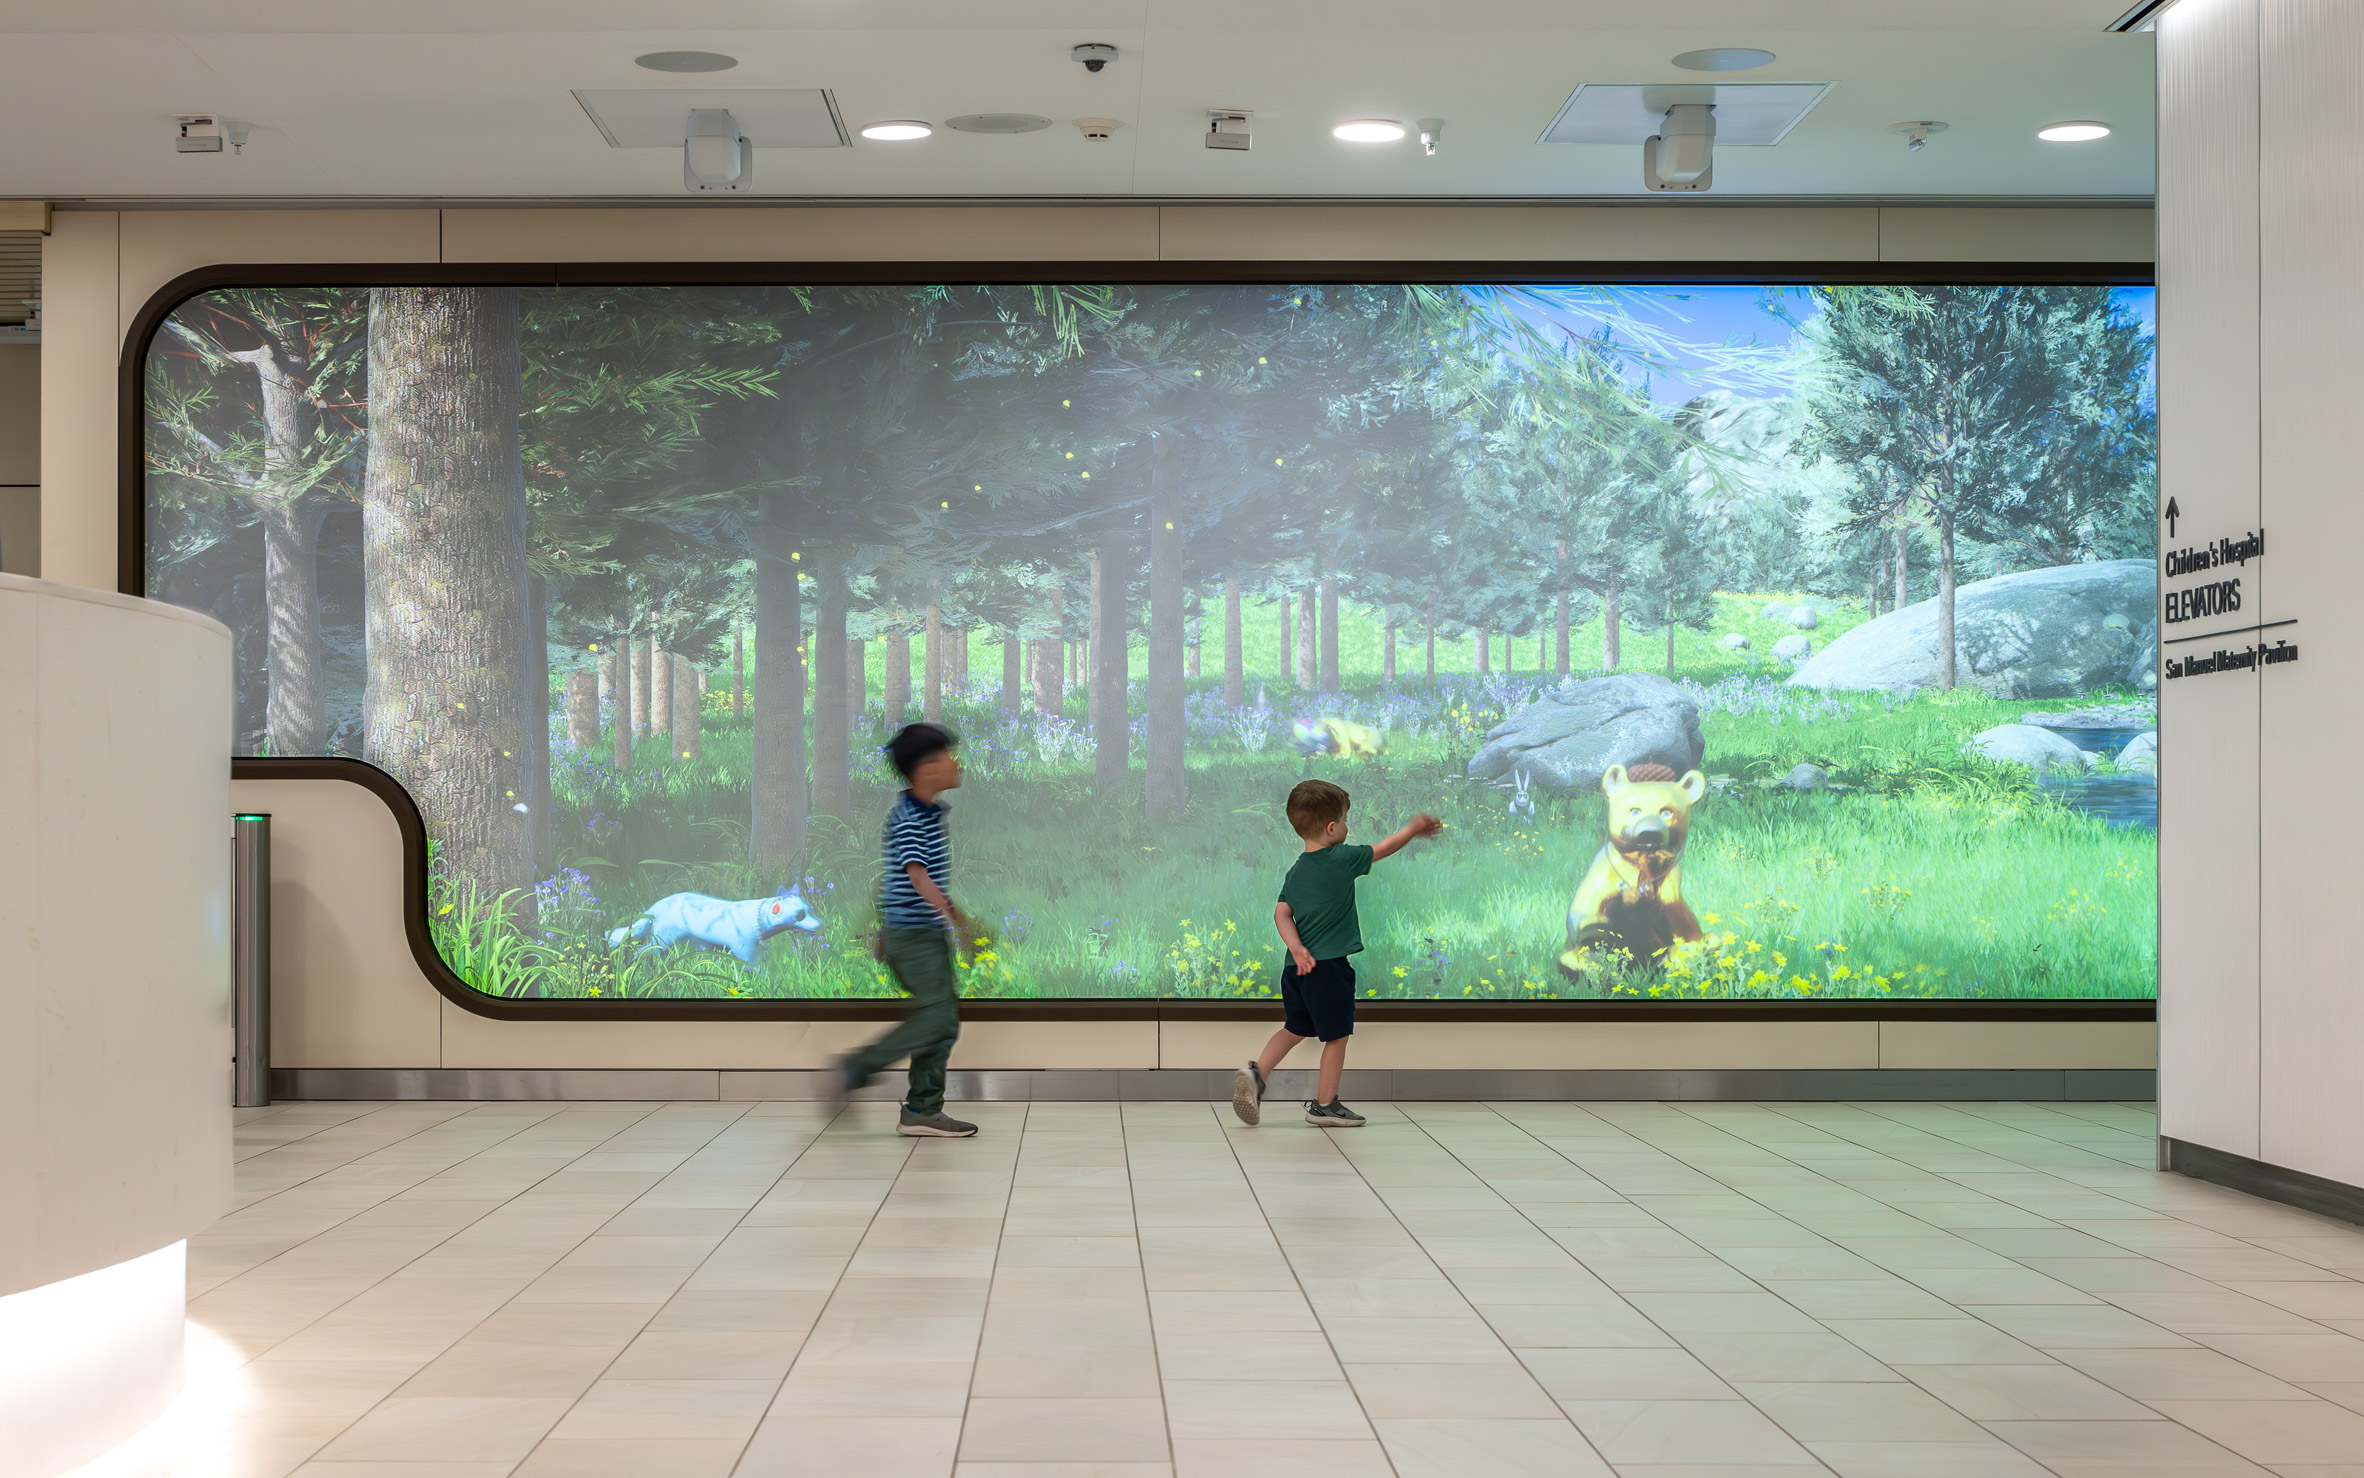 Digital display in hospital